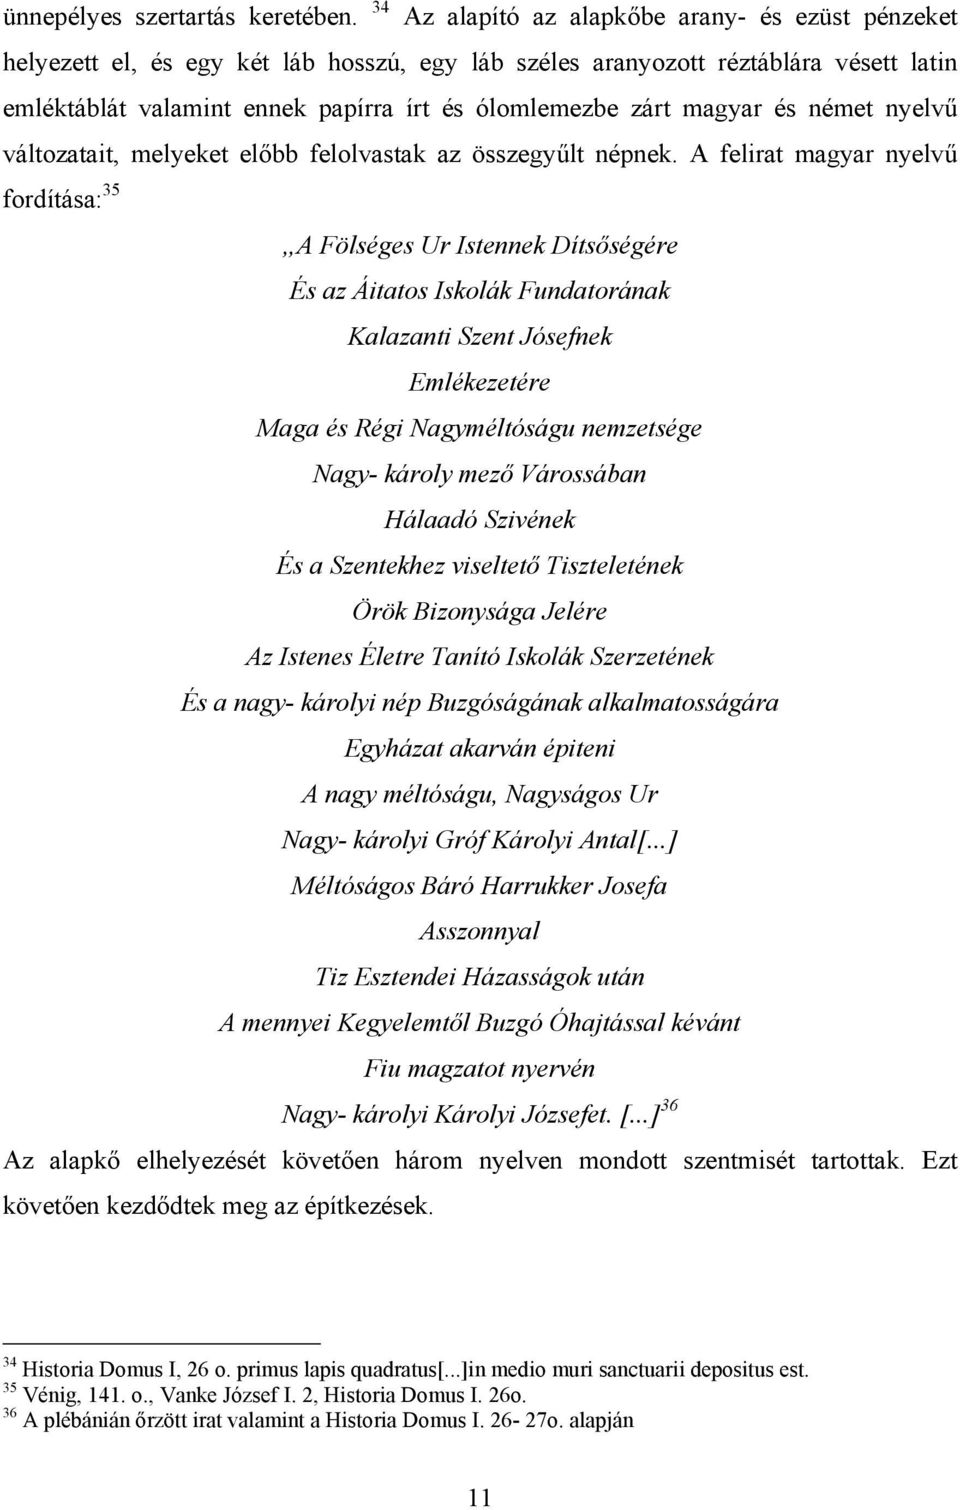 magyar és német nyelvű változatait, melyeket előbb felolvastak az összegyűlt népnek.